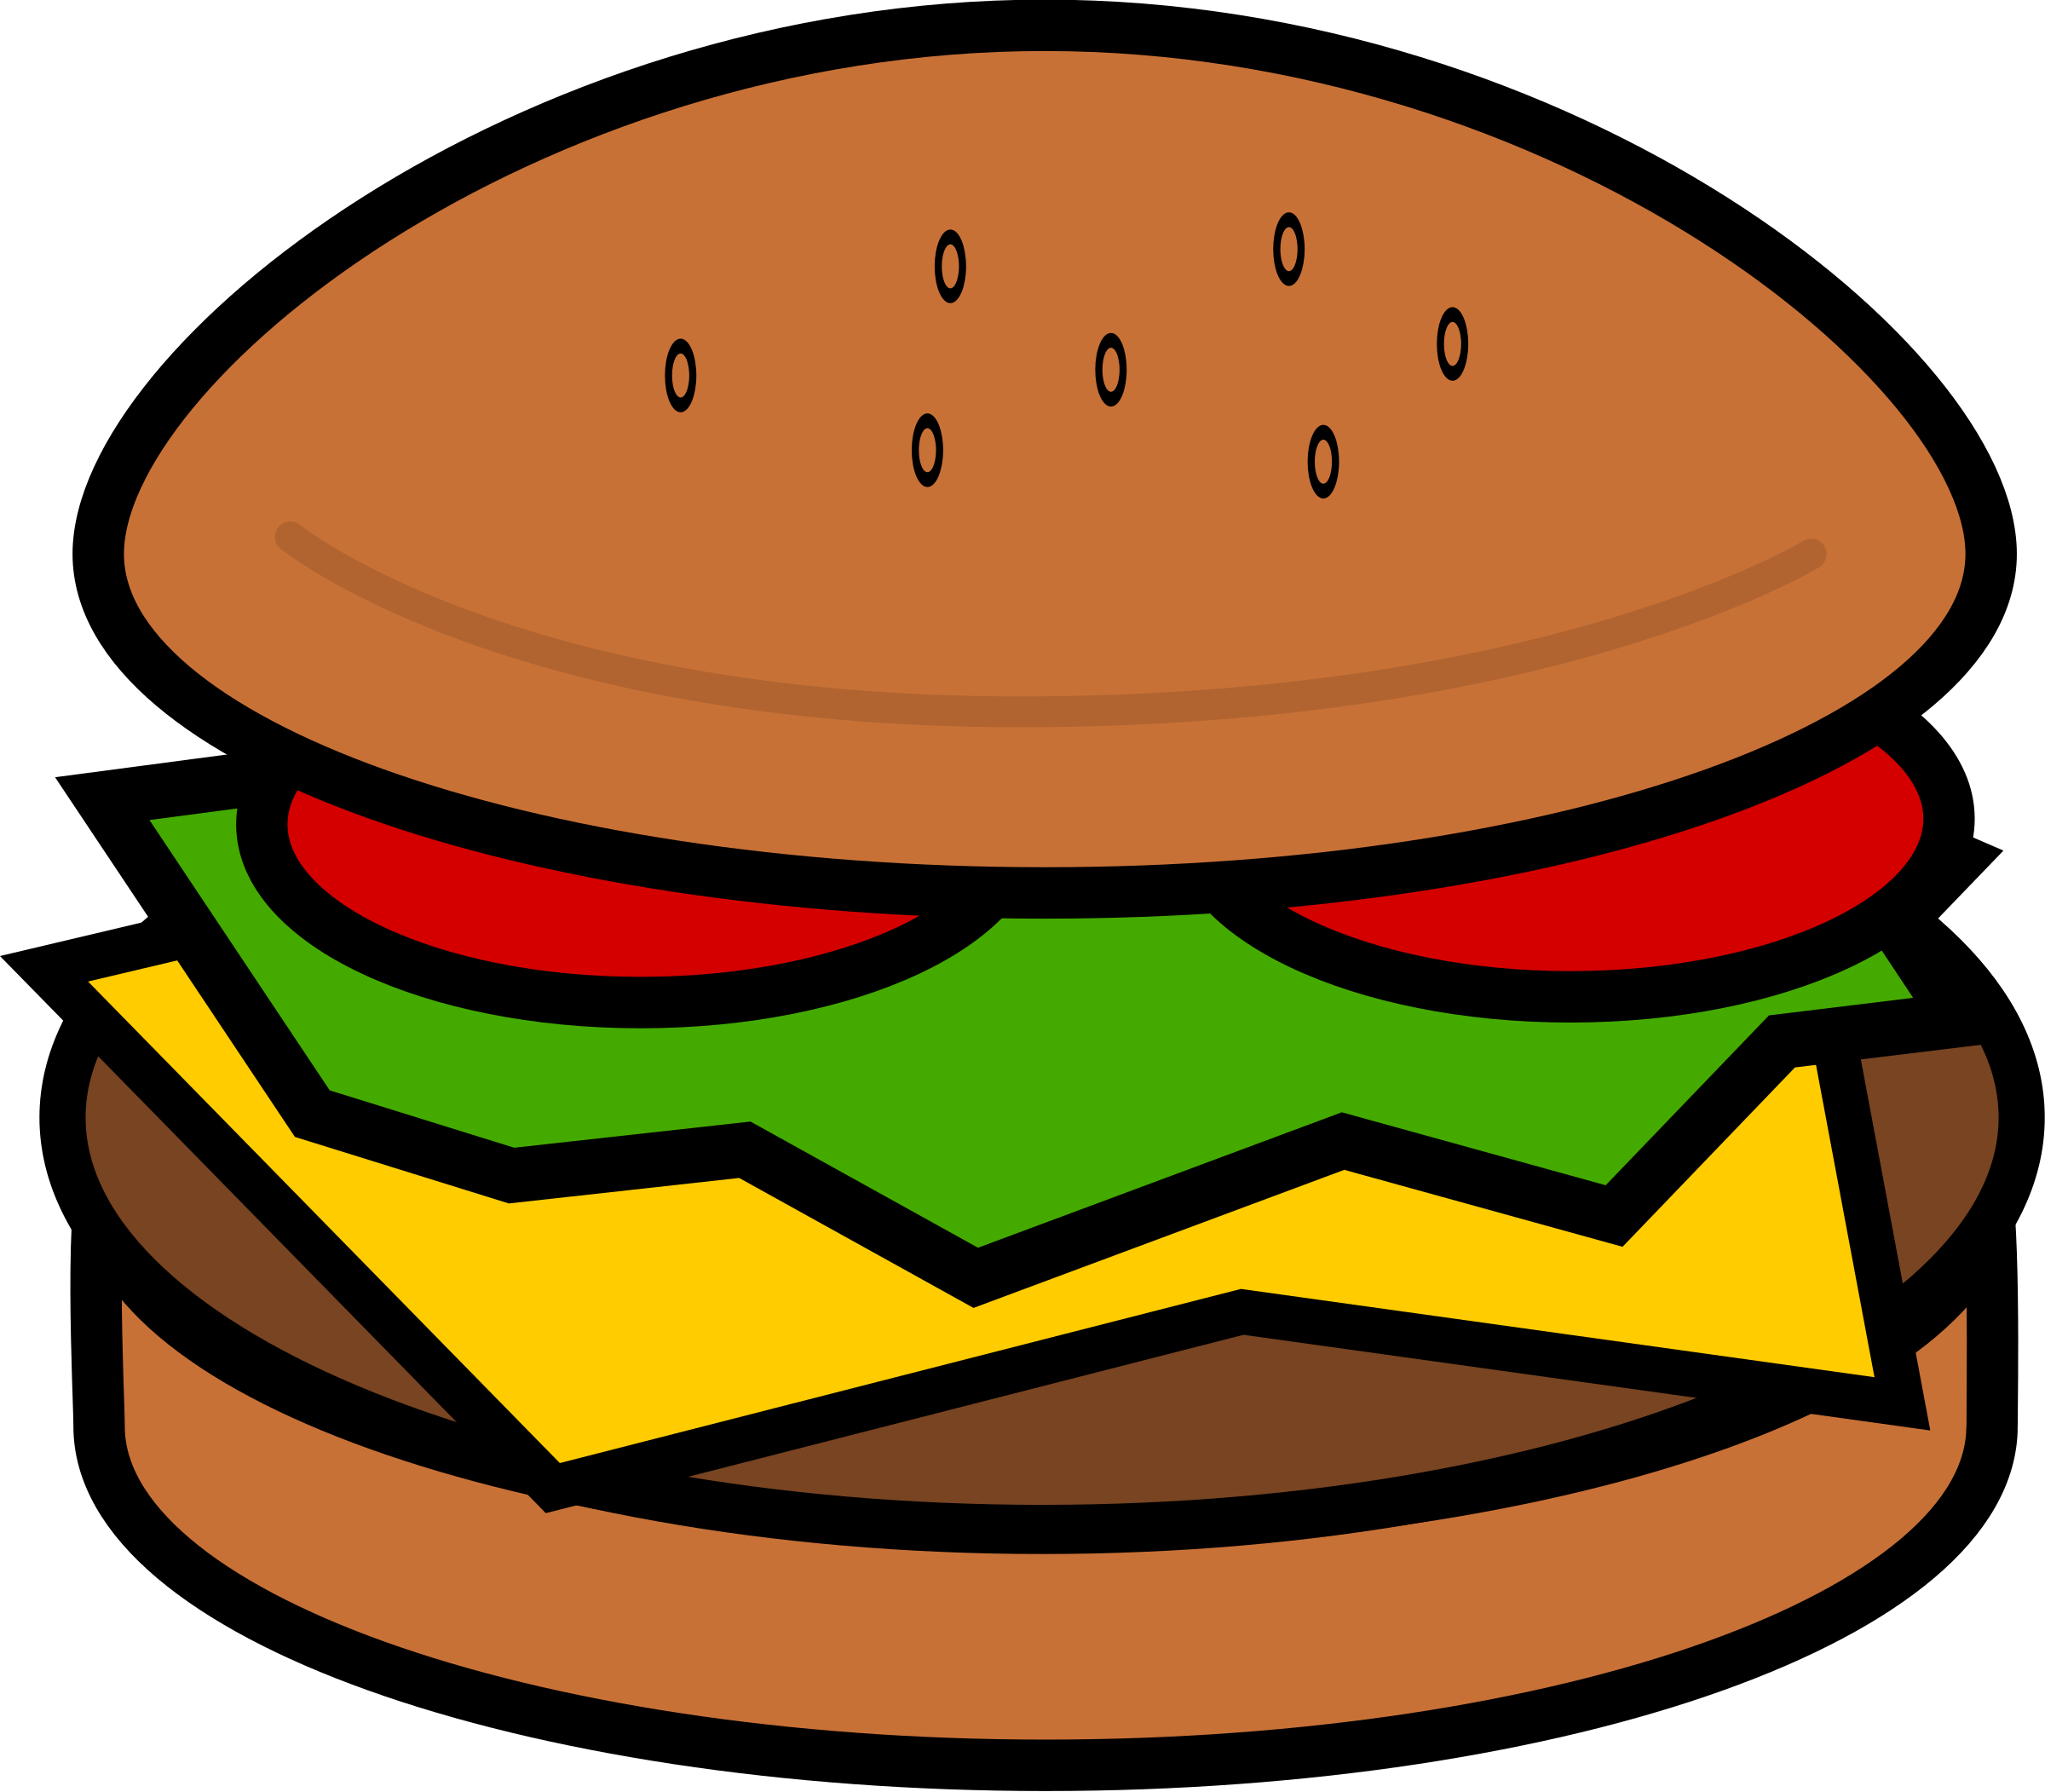 Cute Hamburger Wallpapers - Top Free Cute Hamburger Backgrounds